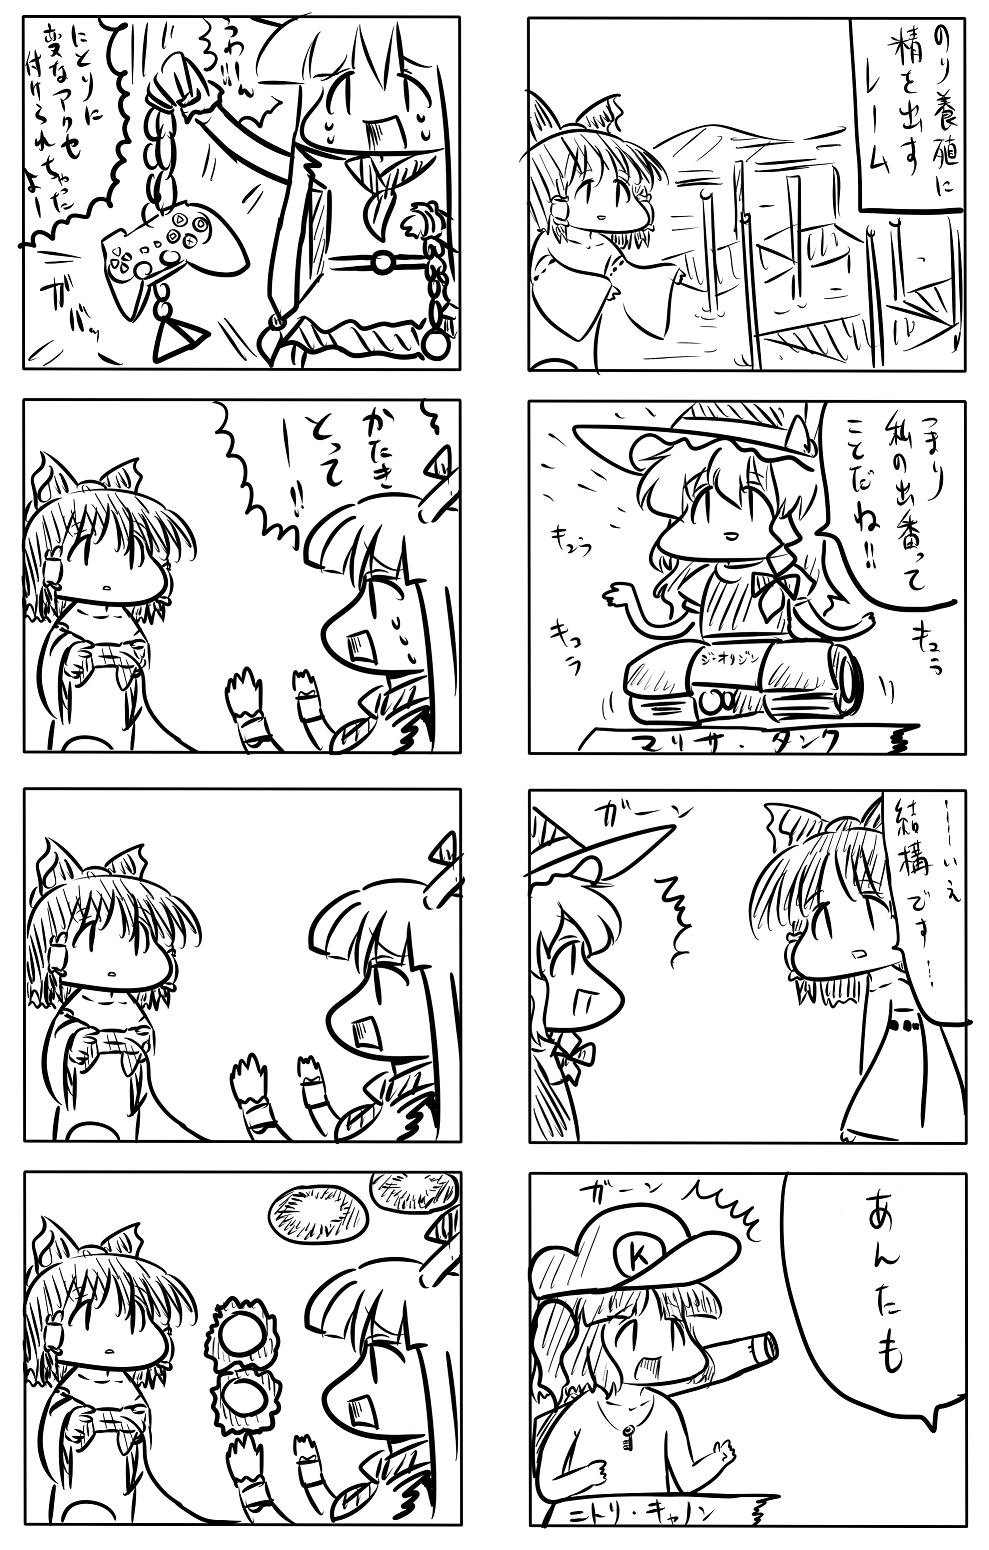 東方漫画358-完コナミコマンド